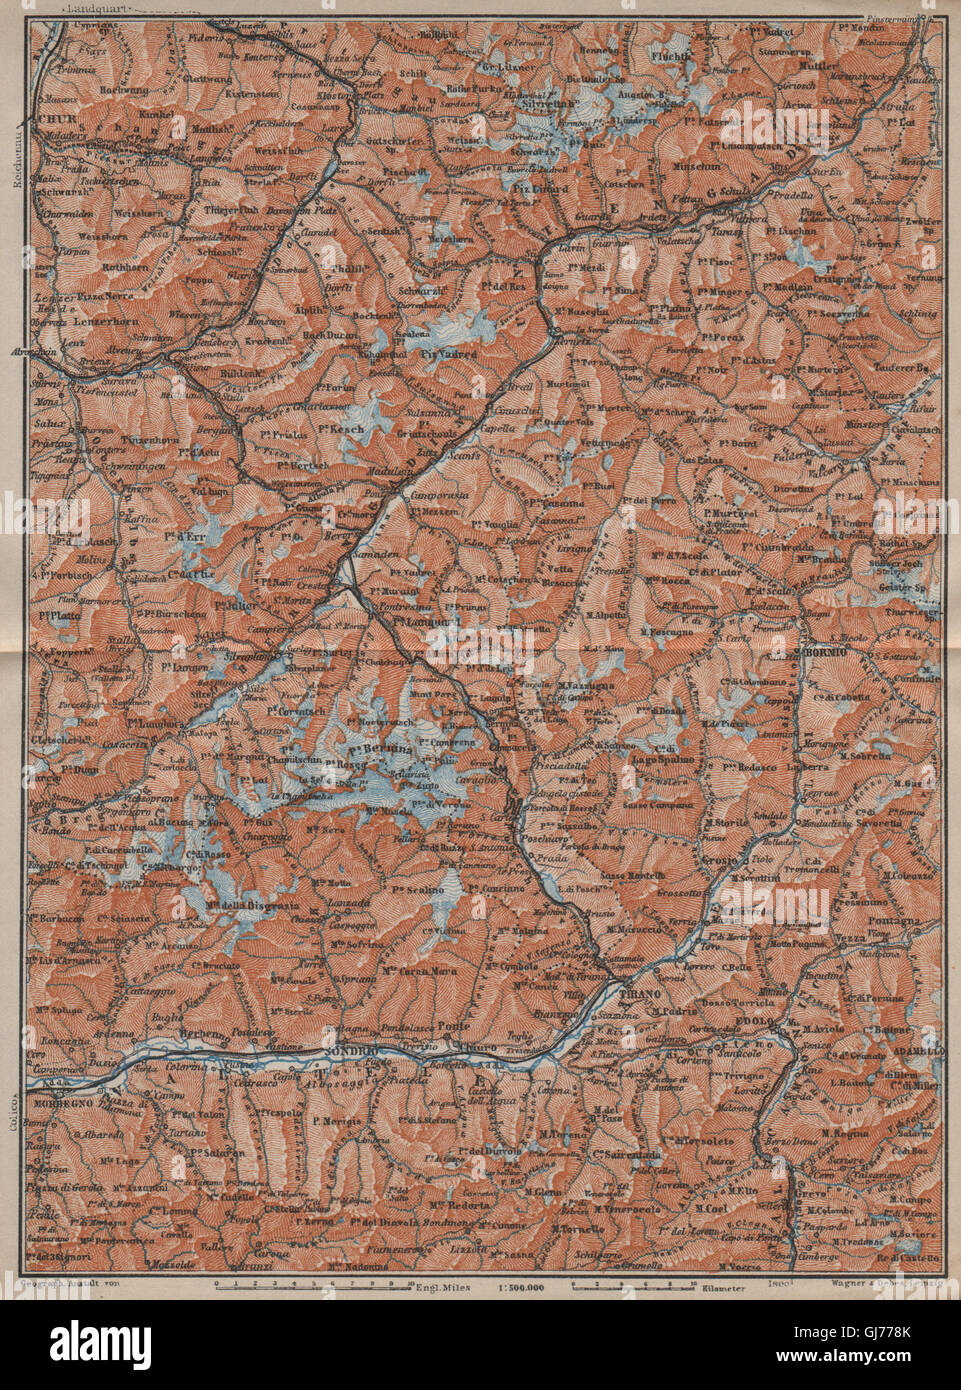 ENGADINE/VAL TELLINA. Davos Arosa Sils Bormio Livigno Sondrio Chur, 1913 map Stock Photo